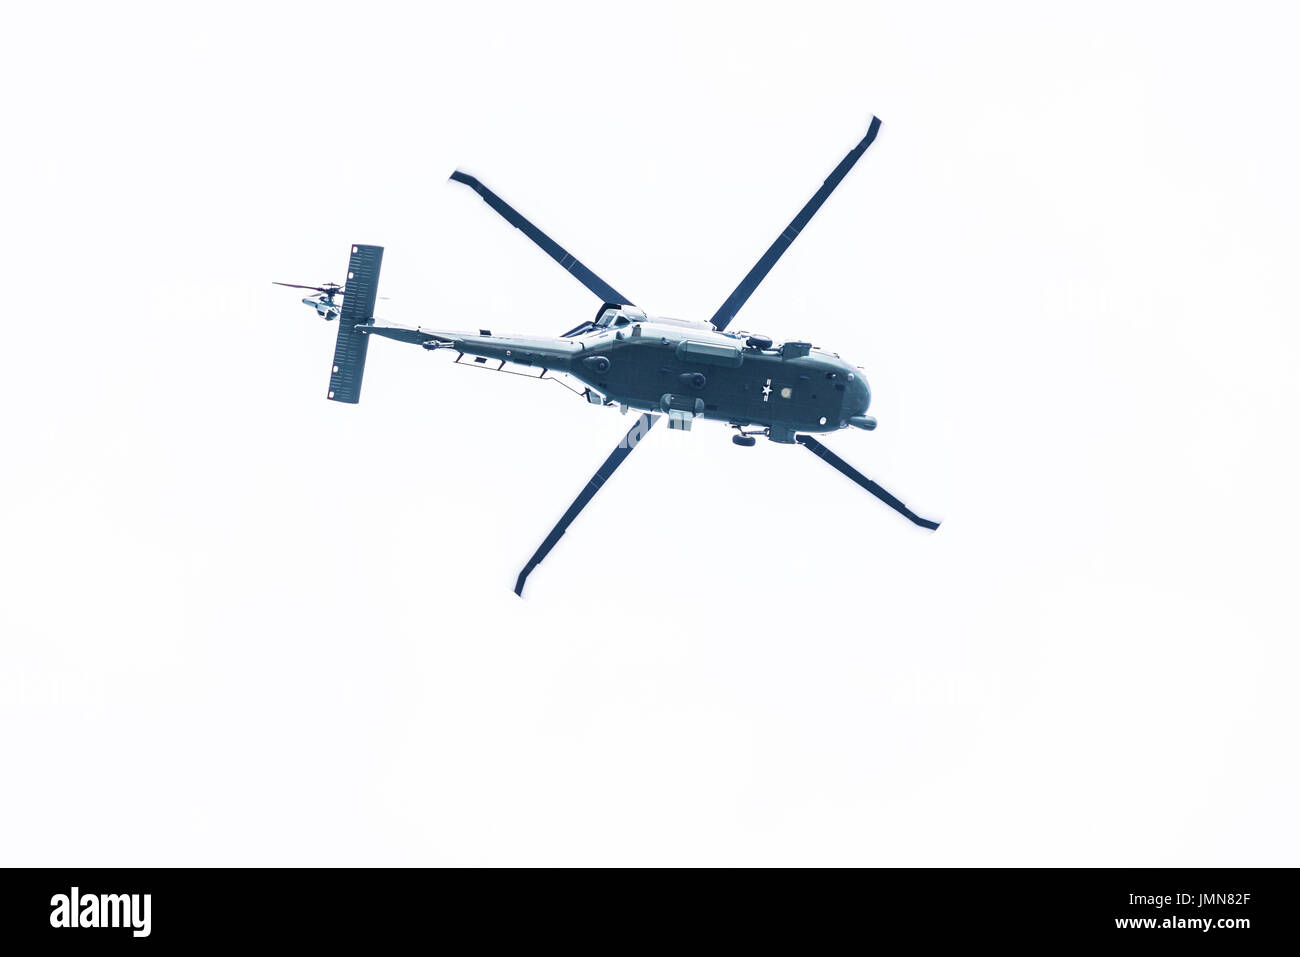 Washington DC, USA - Le 17 mars 2017 : élection présidentielle trois hélicoptères volant isolés contre ciel nuageux par national mall Banque D'Images